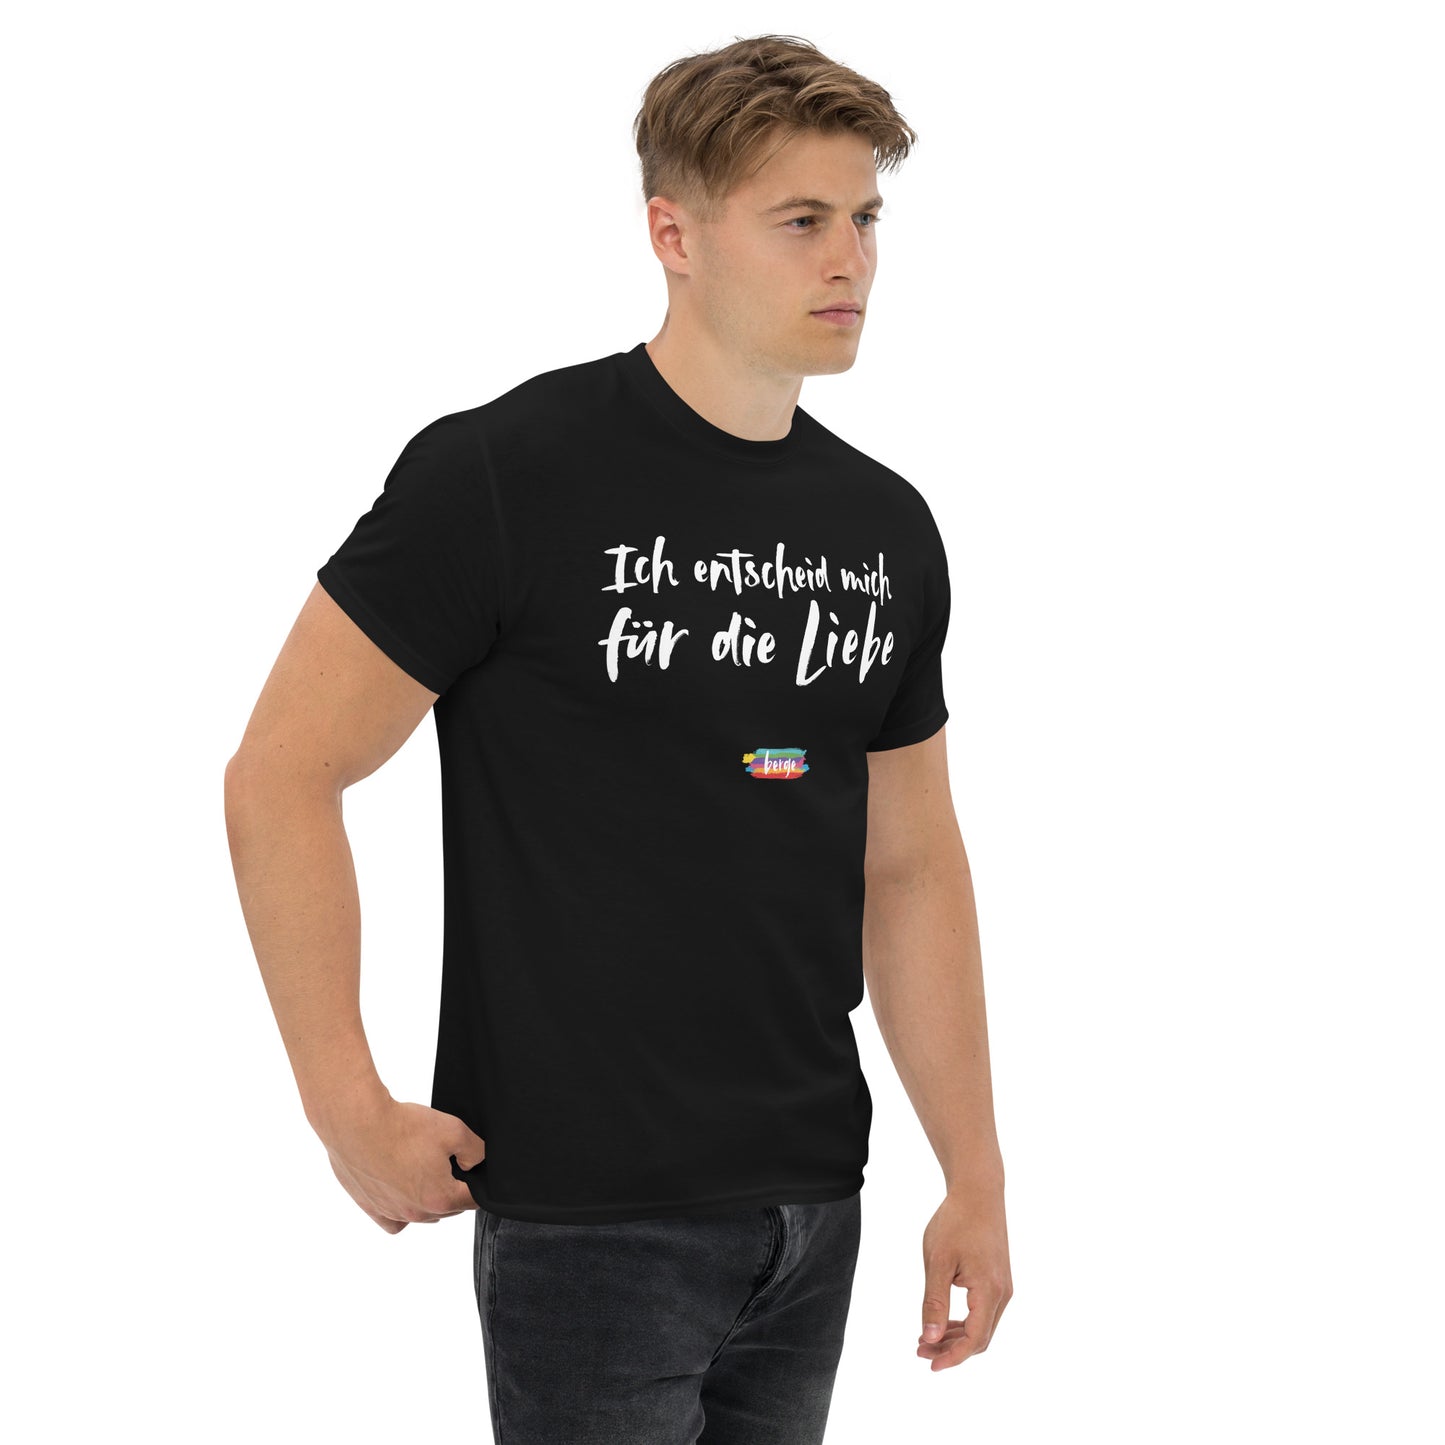 T-Shirt Herren "Für die Liebe" schwarz